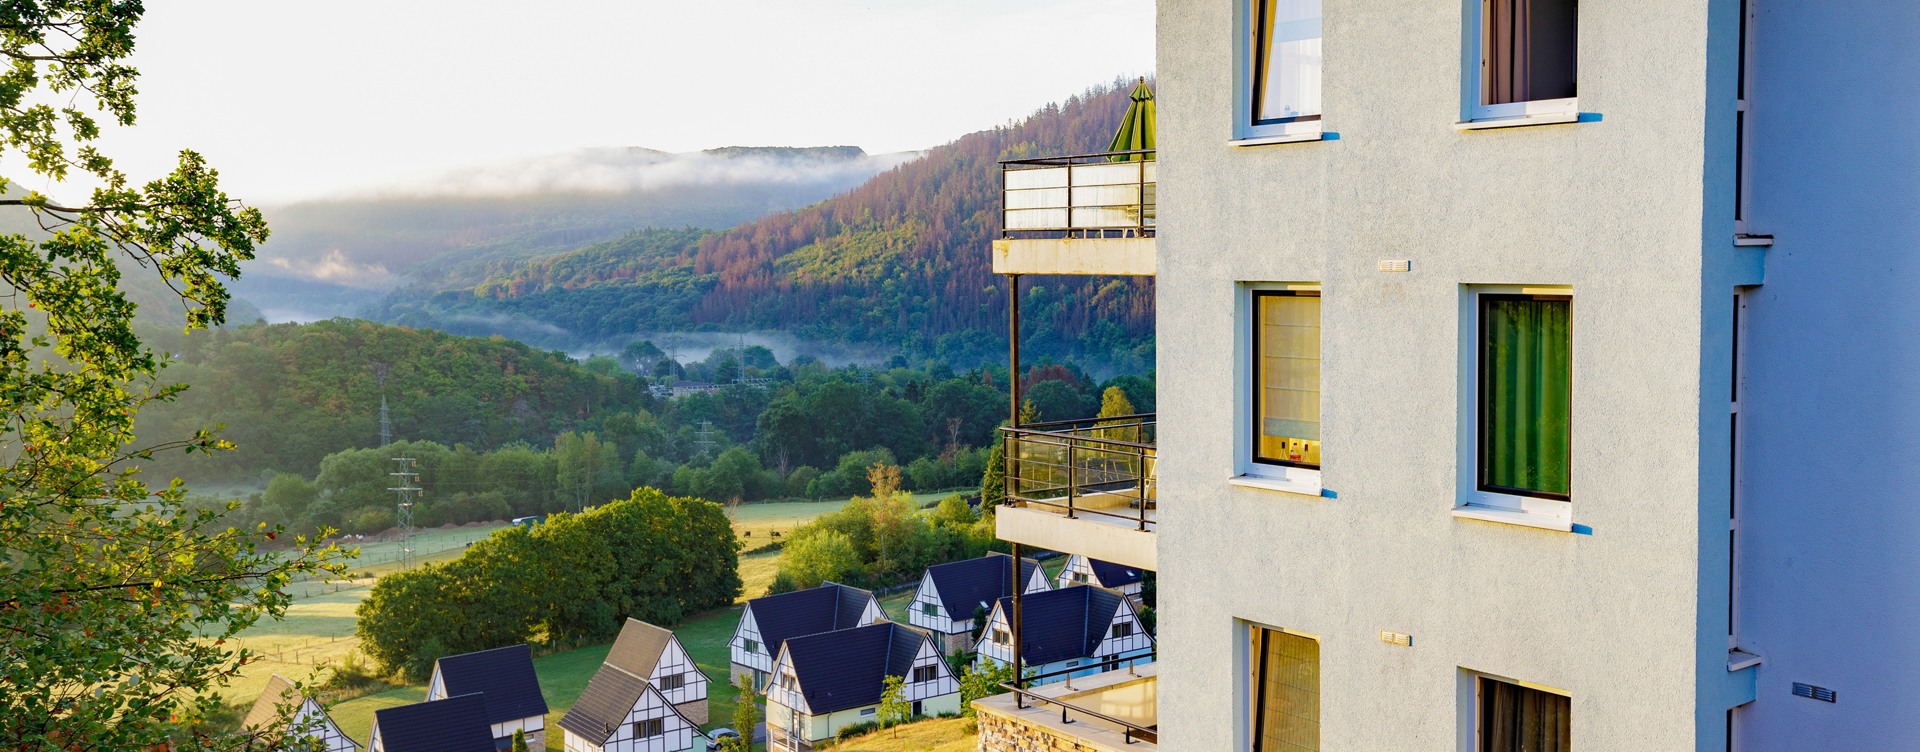 Le meilleur parc de vacances de l’Eifel : 
Dormio Resort Eifeler Tor